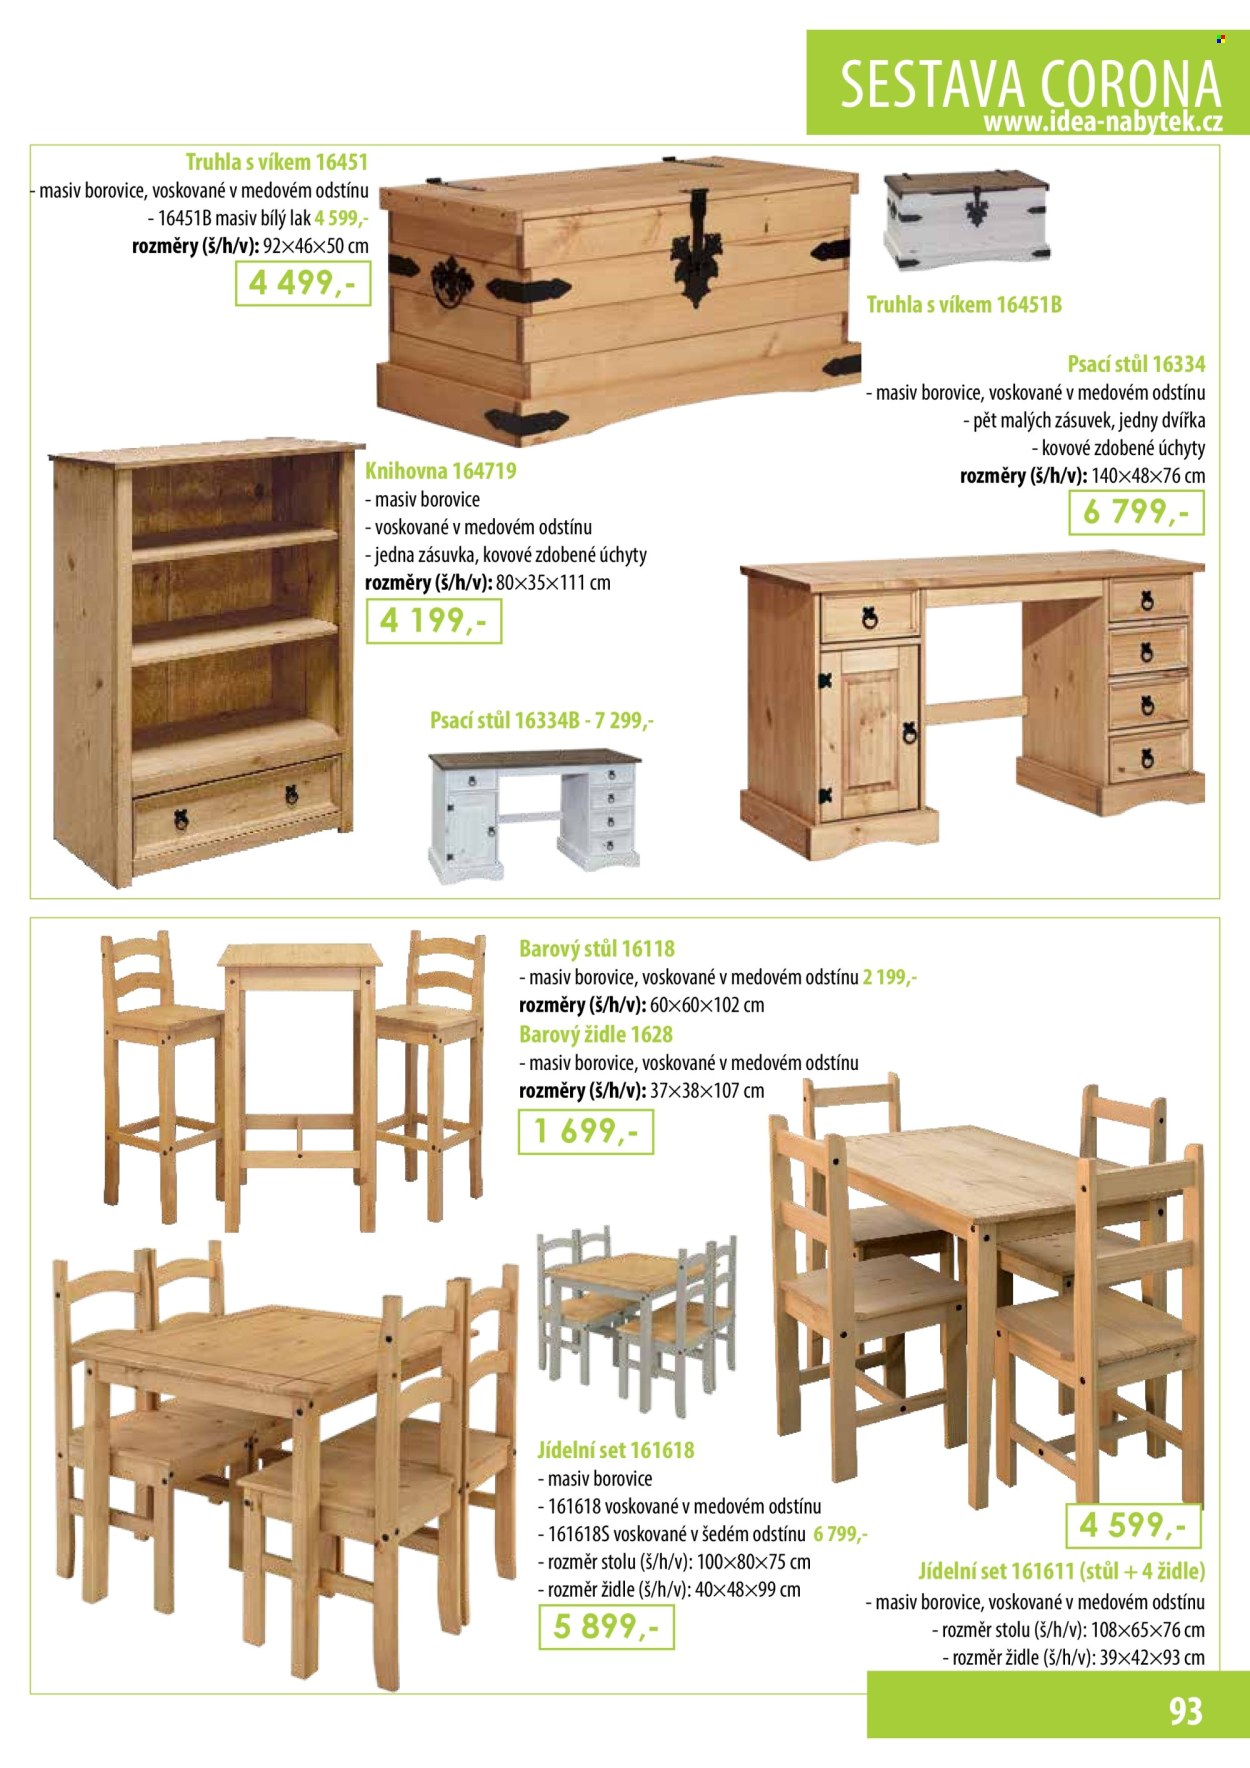 thumbnail - Leták IDEA nábytek - Produkty v akci - barový stůl, jídelní sestava, stůl, židle, knihovna, psací stůl. Strana 93.